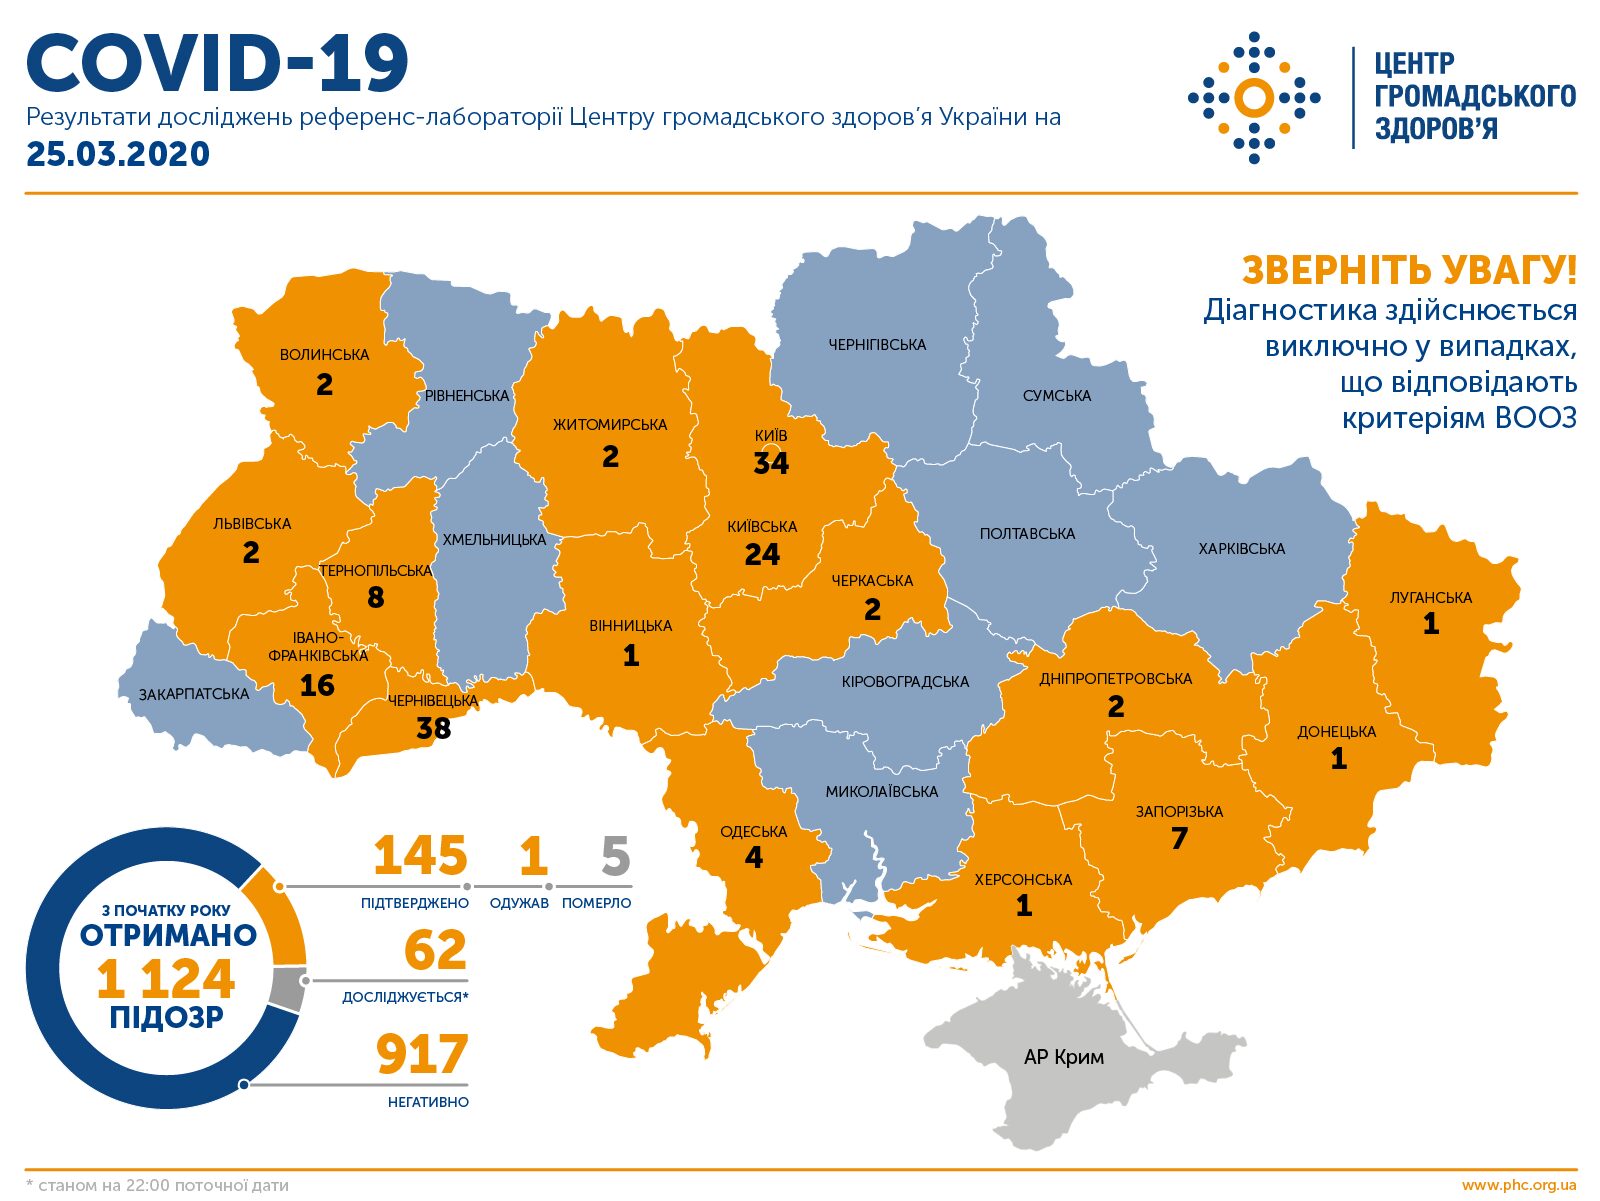 В Запорожской области 7 случаев заражения коронавирусом COVID-19